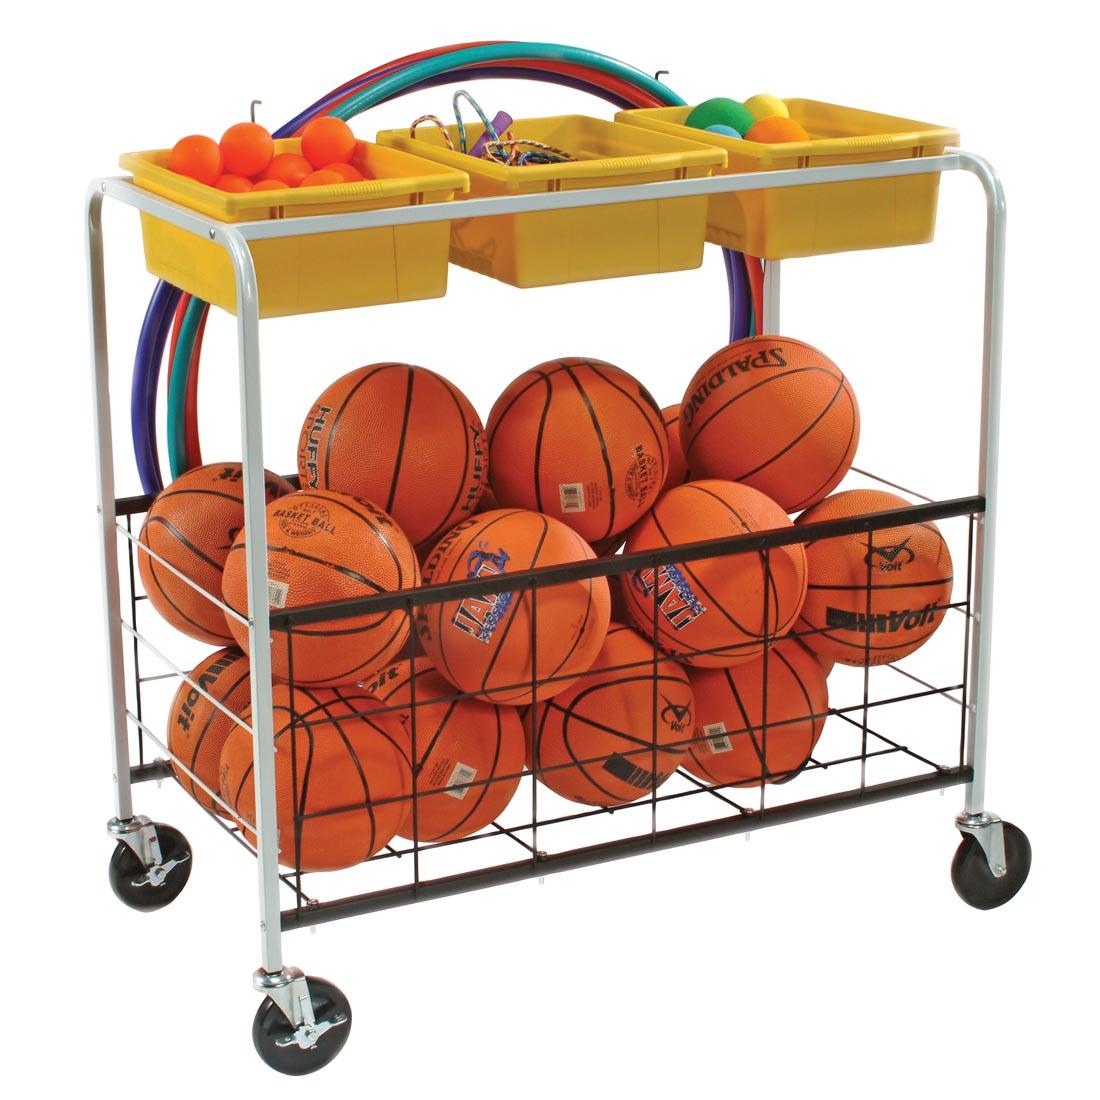 Phys-Ed Cart holding hula hoops, balls and jump ropes